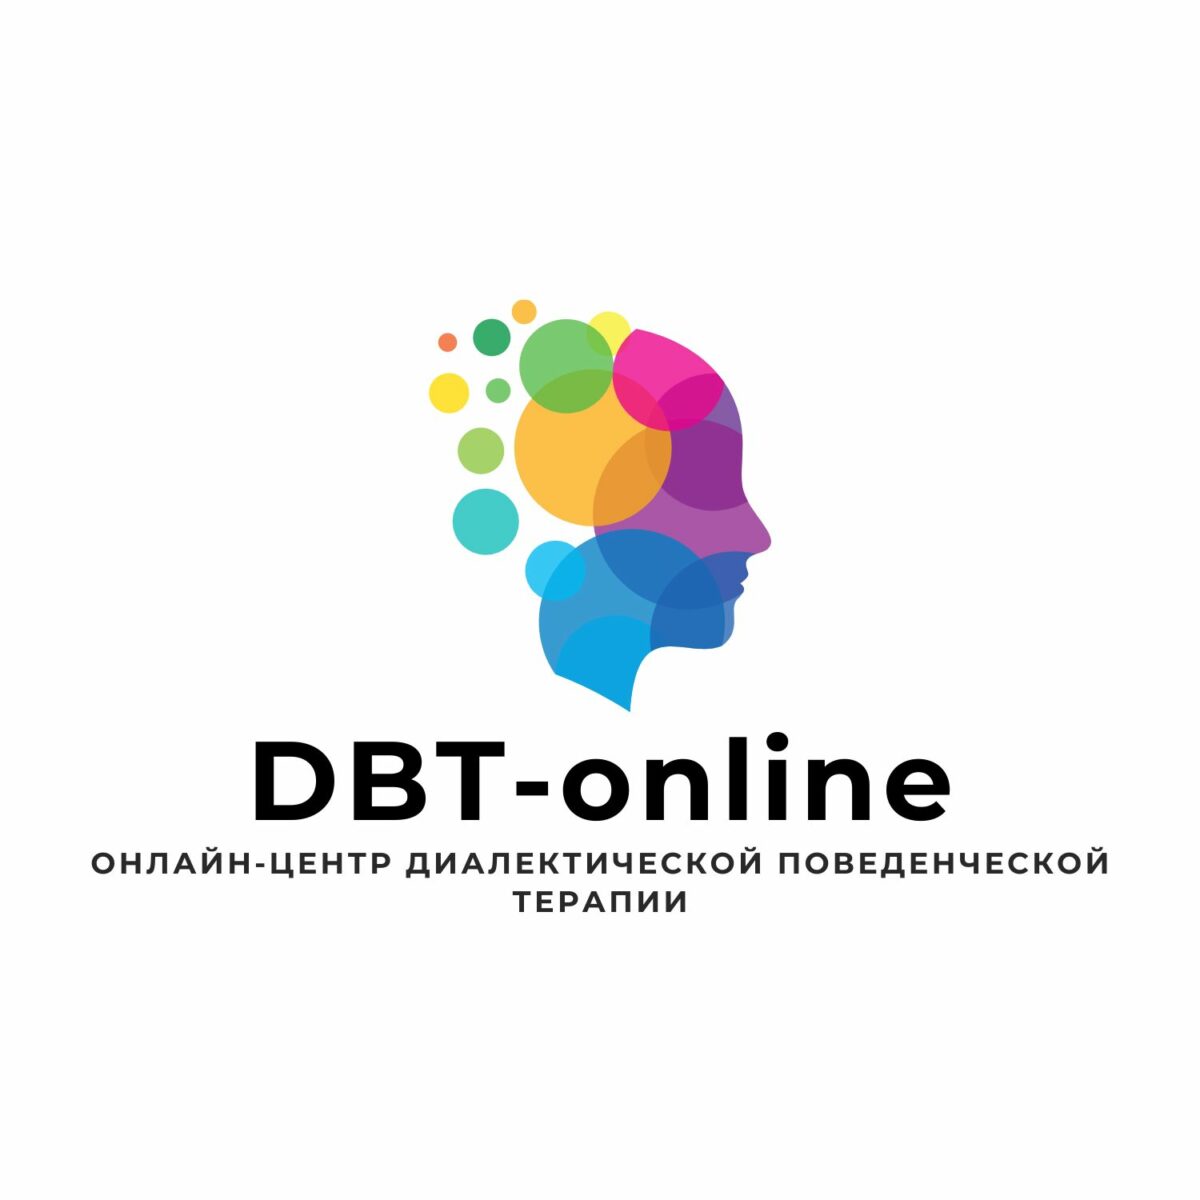 DBT-online